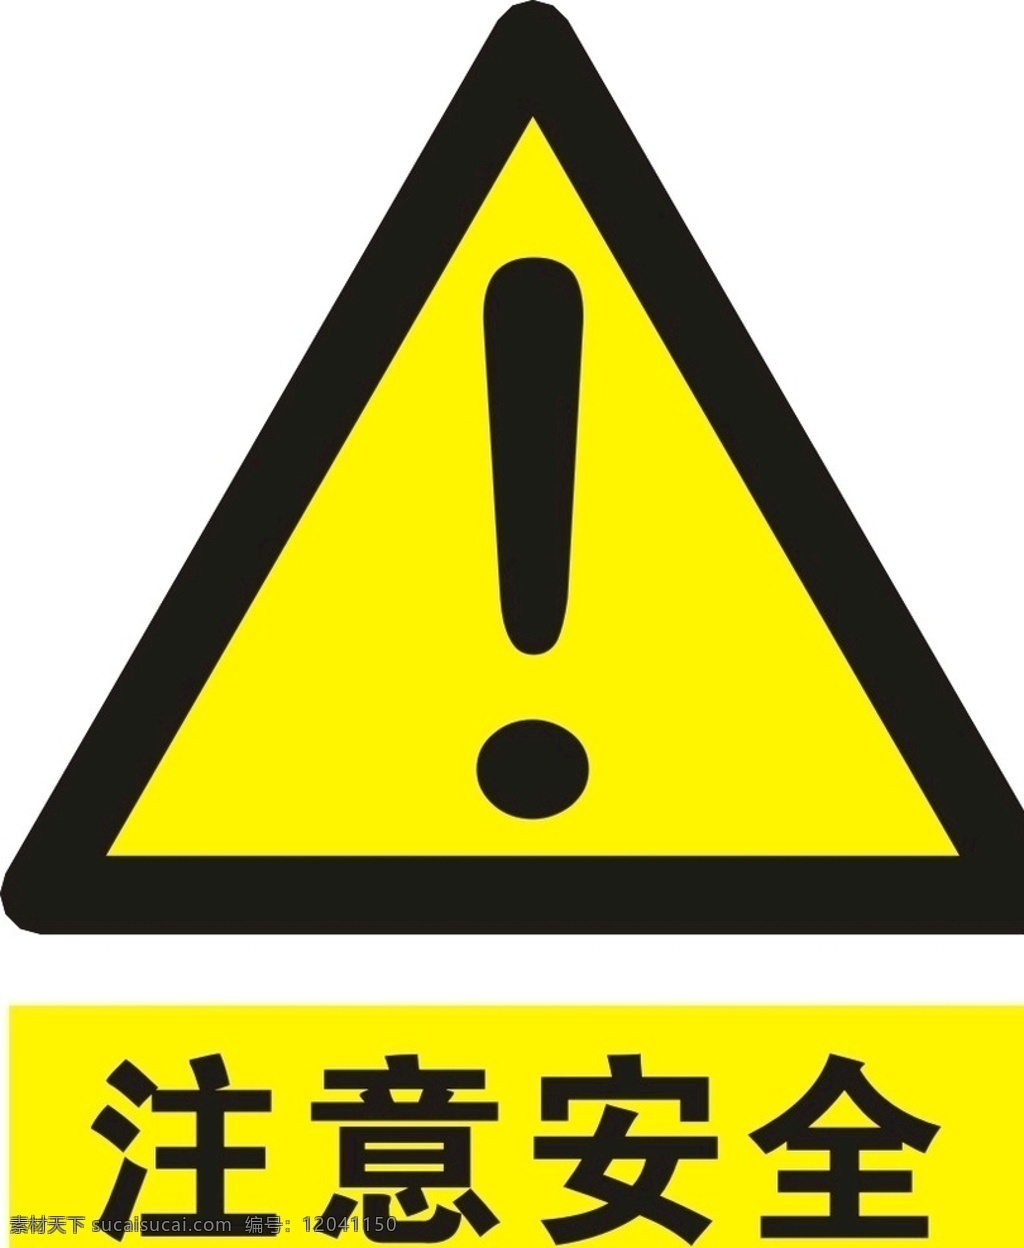 注意安全 注意 安全 当心 标语安全 安全标志 当心标志 禁止标志 英 文安全 标示 工地安全 工地标志 安全标示